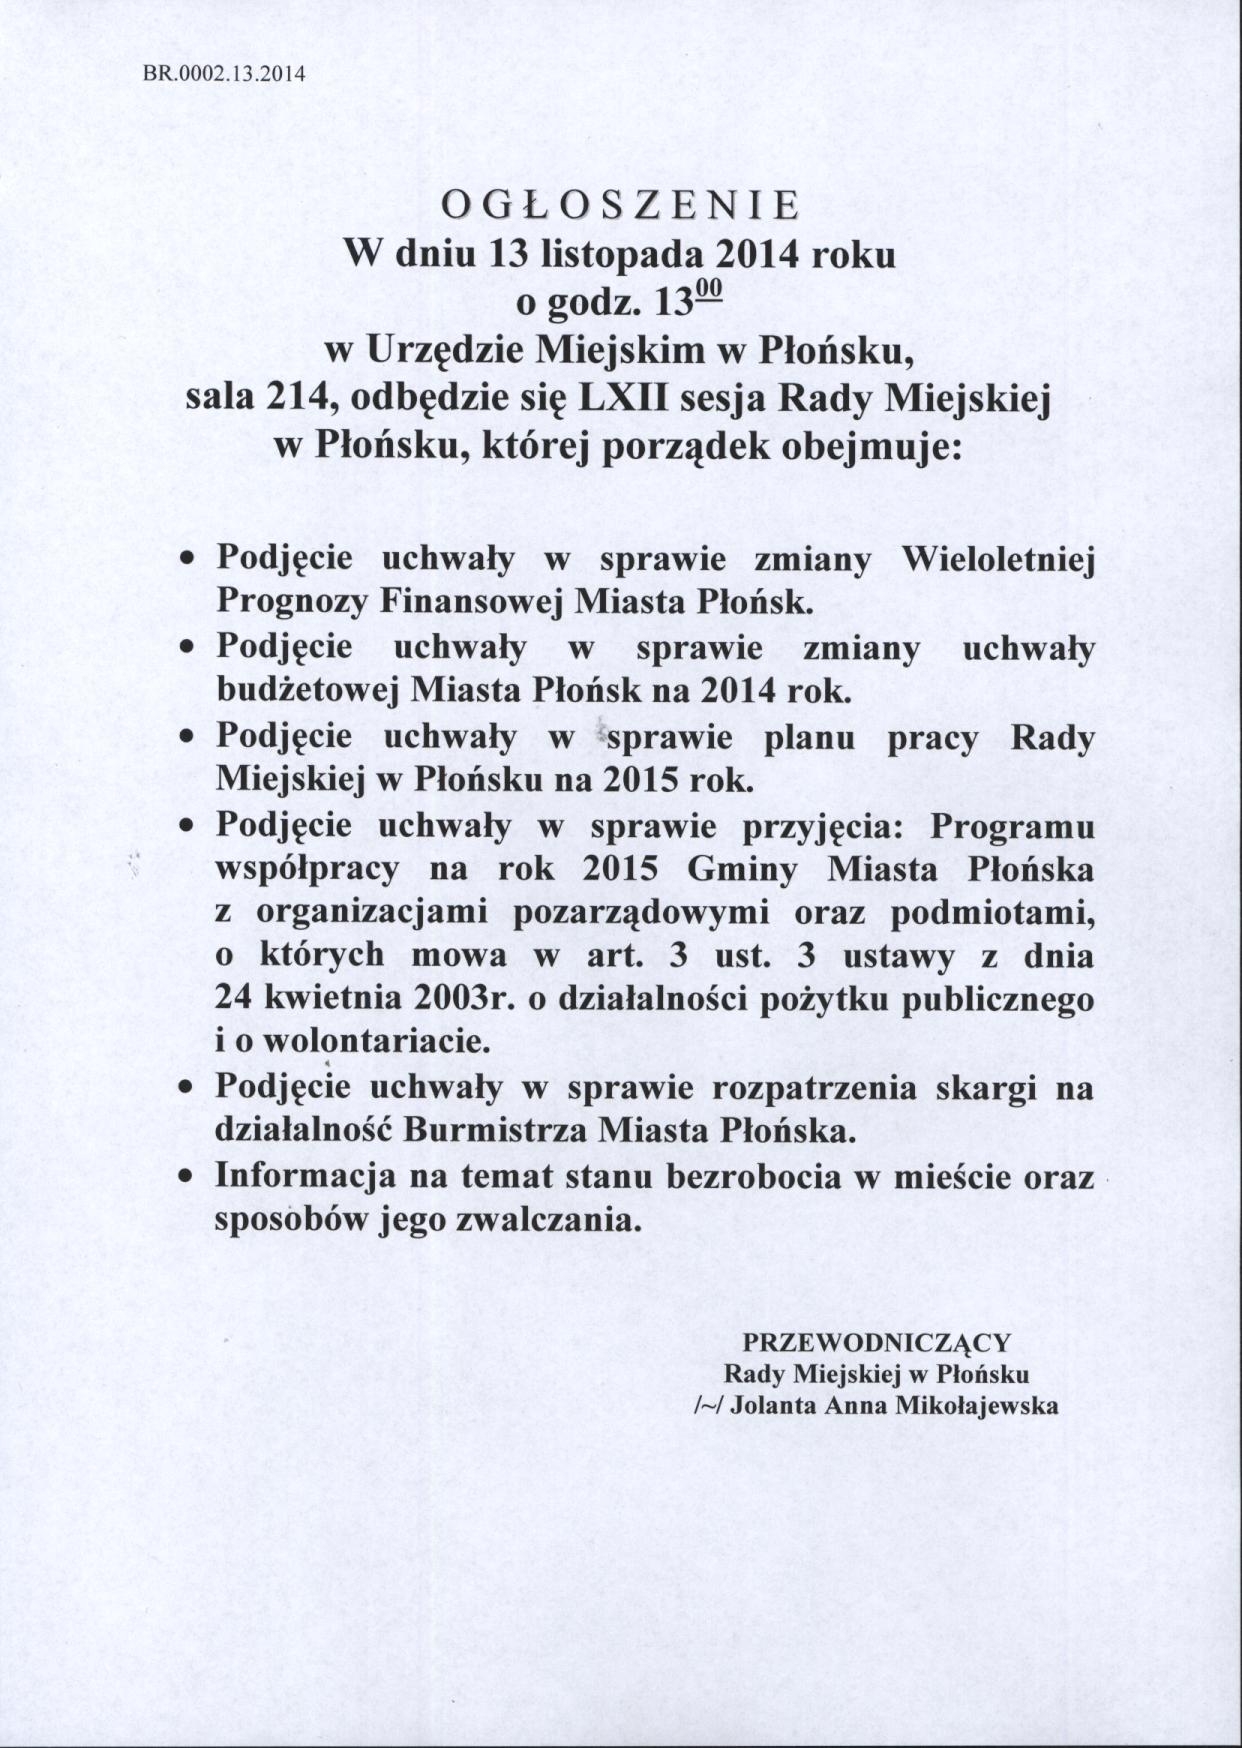 Ogłoszenie o LXII sesji Rady Miejskiej w Płońsku